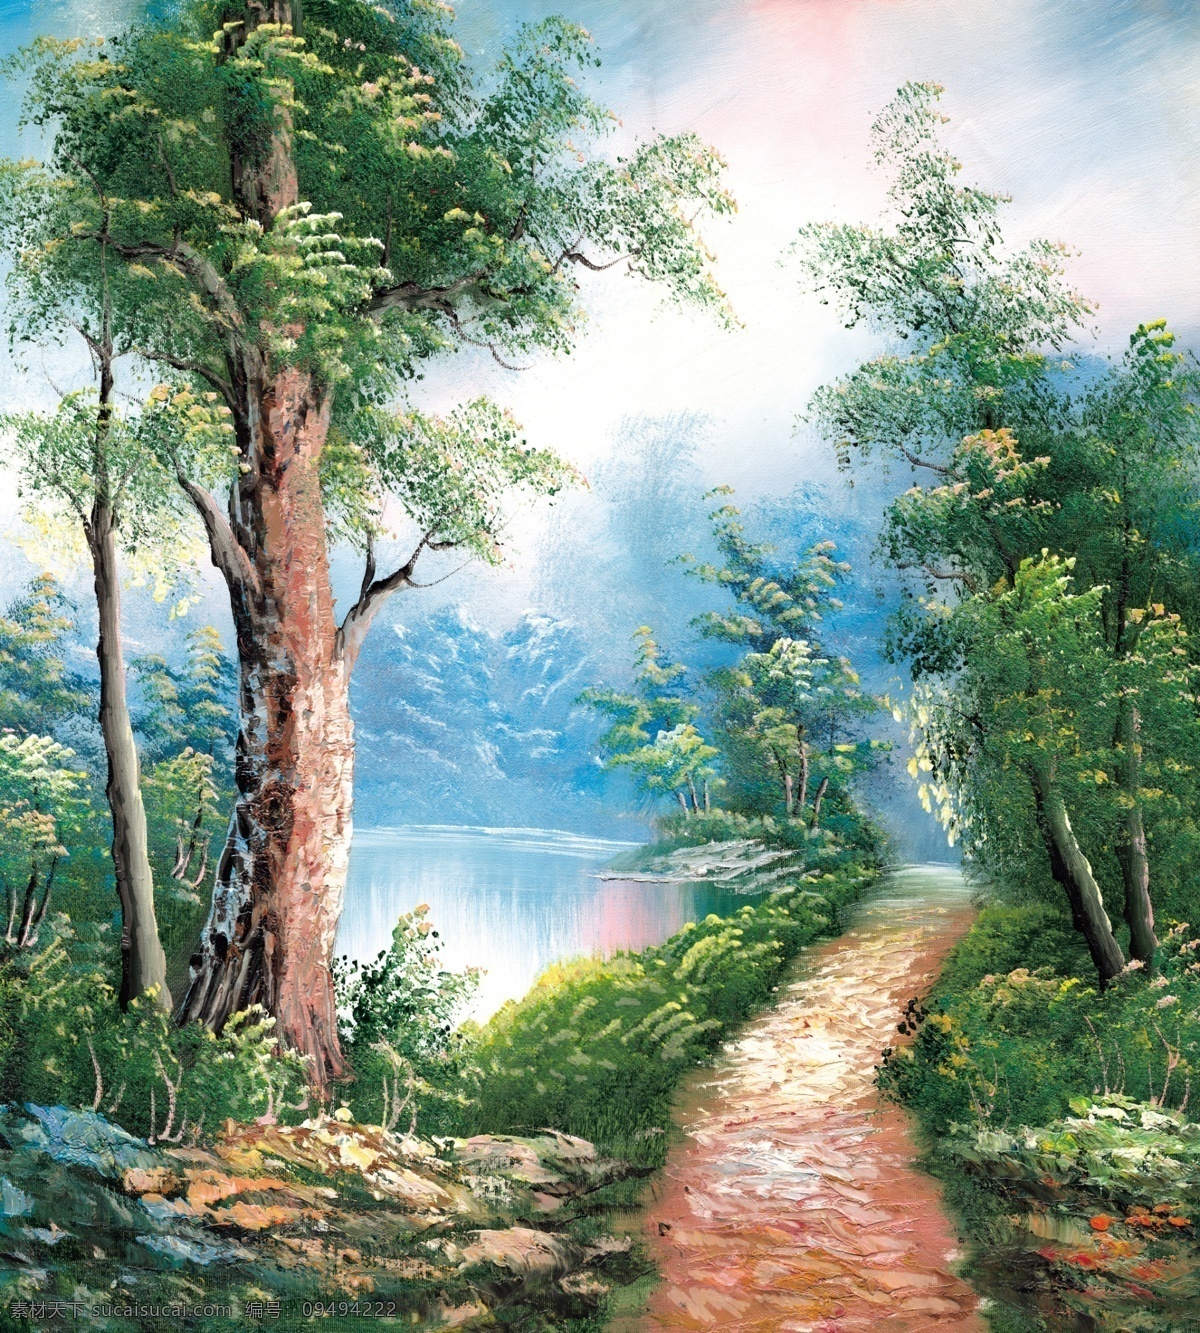 童话 世界 大树 湖 绘画书法 梦境 童话世界 文化艺术 小路 七彩世界 油画 装饰素材